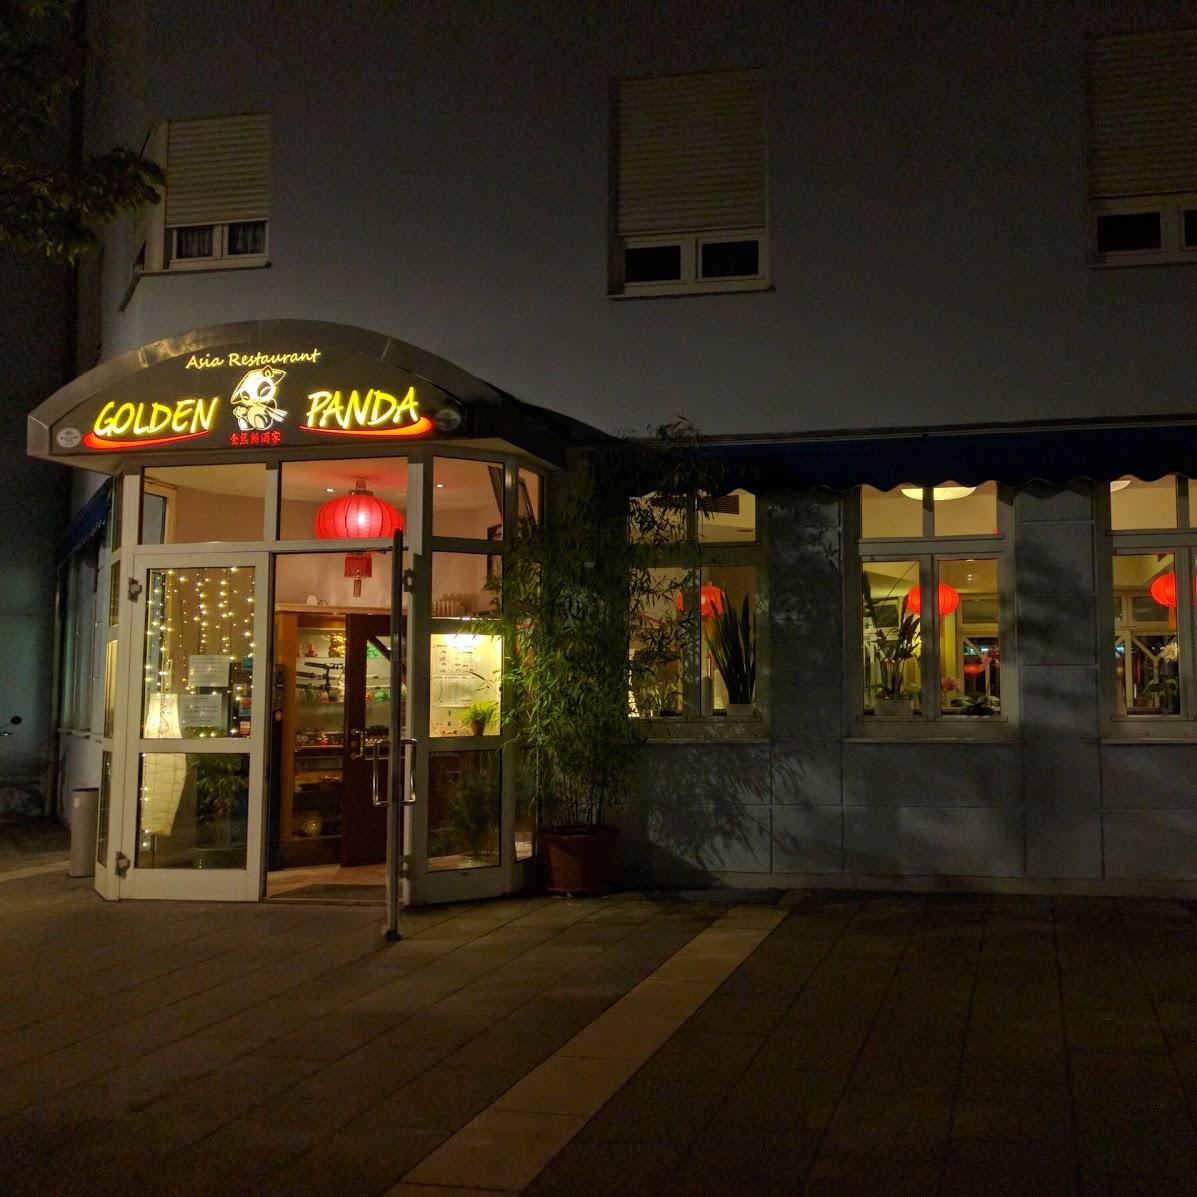 Restaurant "Golden Panda" in Burghausen